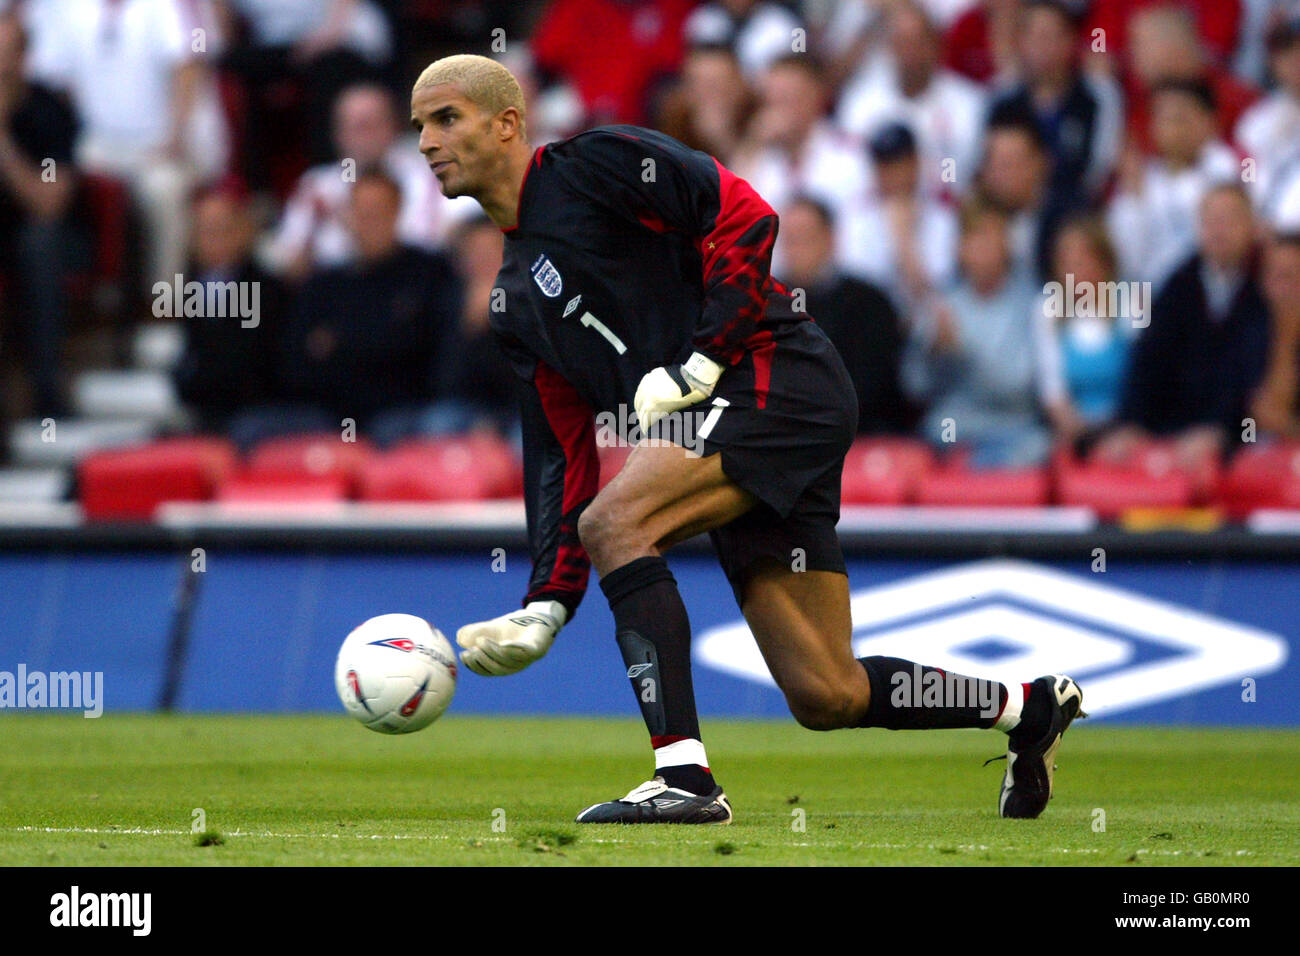 Soccer - Championnat d'Europe 2004 qualificateur - Groupe sept - Angleterre / Slovaquie. David James, gardien de but de l'Angleterre Banque D'Images